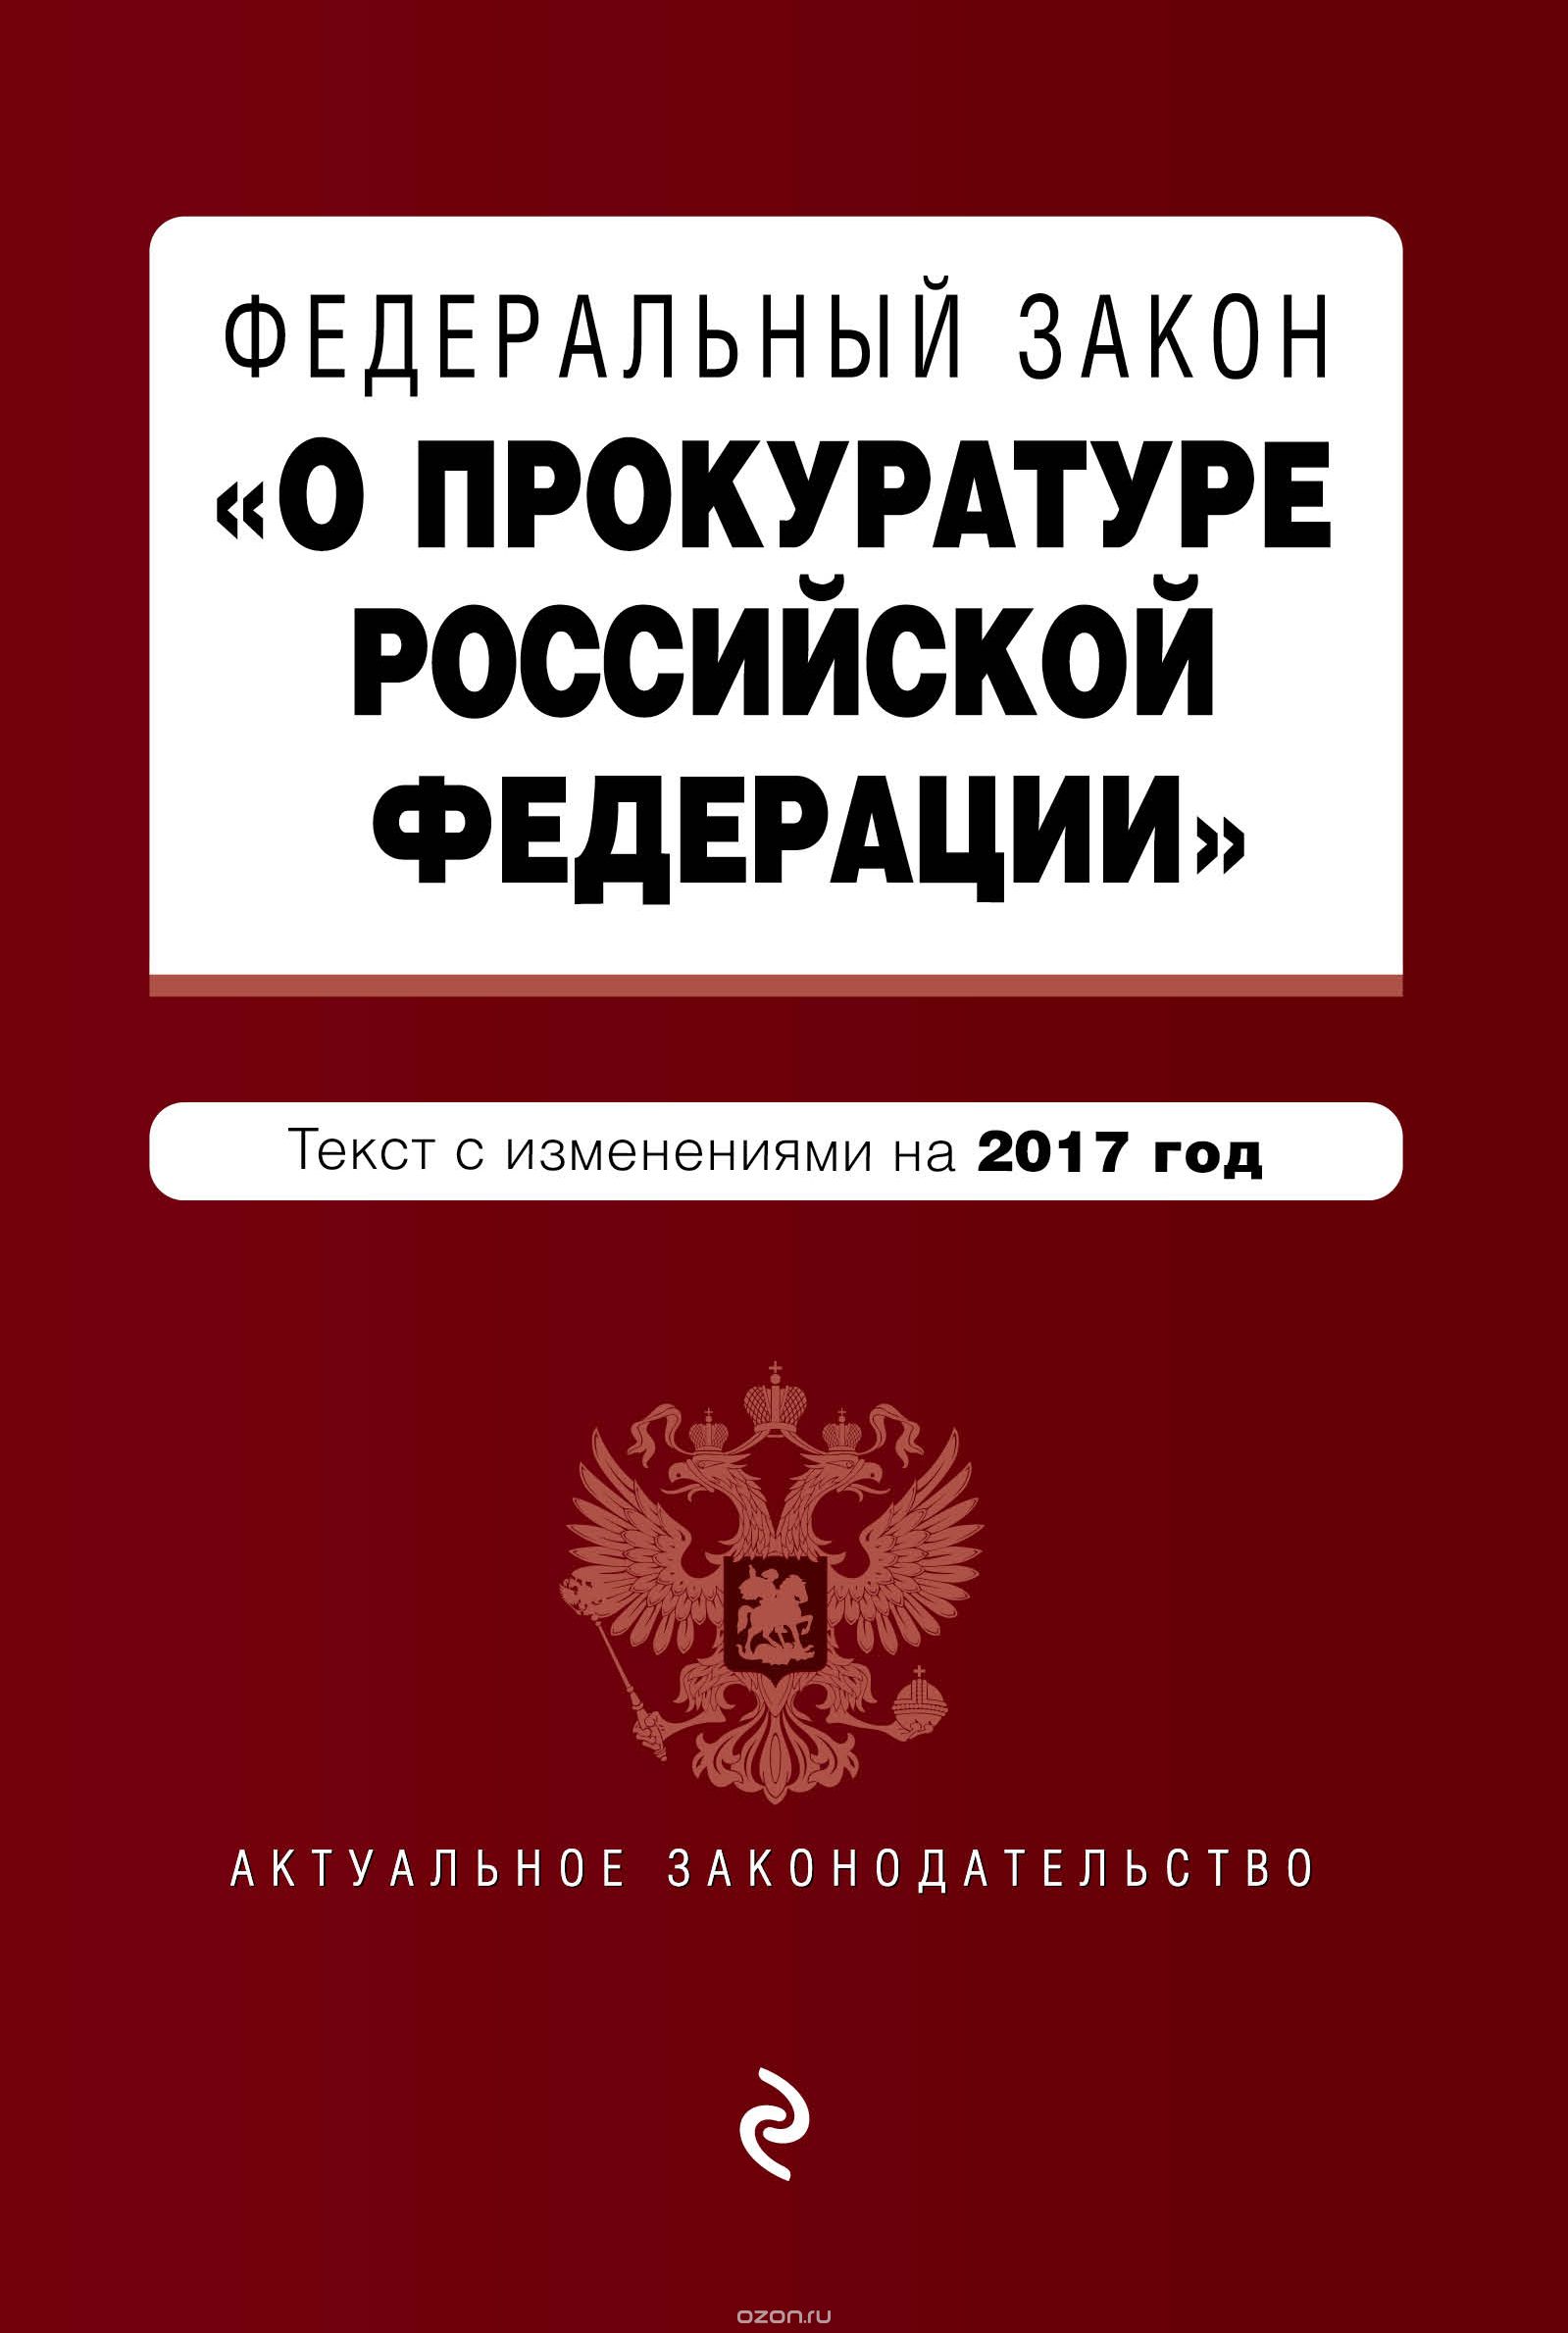 Скачать книгу "Федеральный закон "О прокуратуре Российской Федерации": текст с изменениями на 2017 год"